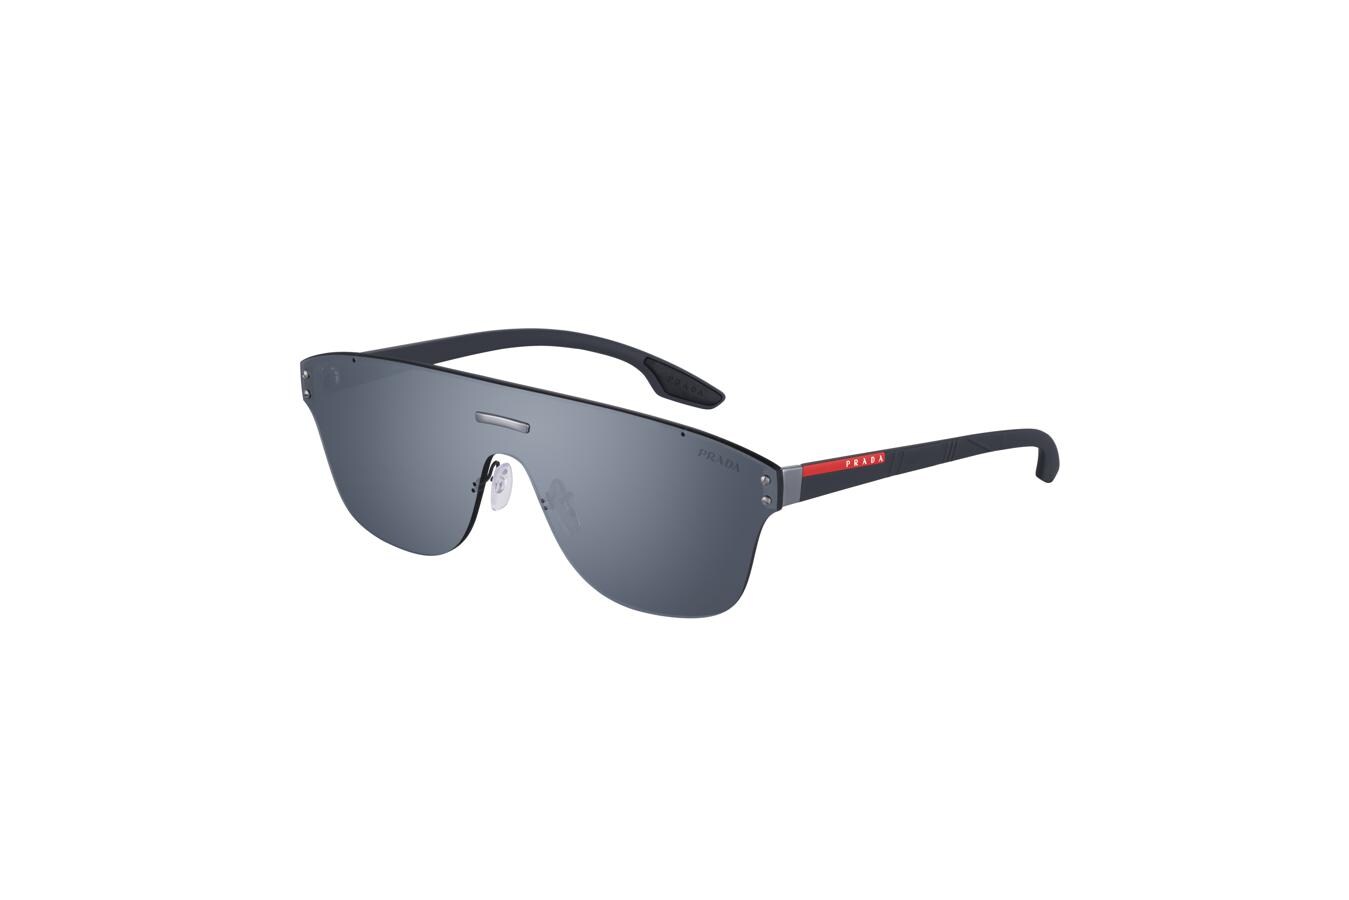 Gafas de sol de Prada. De estilo deportivo y conformadas solo por una gran pantalla, modelo de gafas de Prada Línea Rosso (CPV)